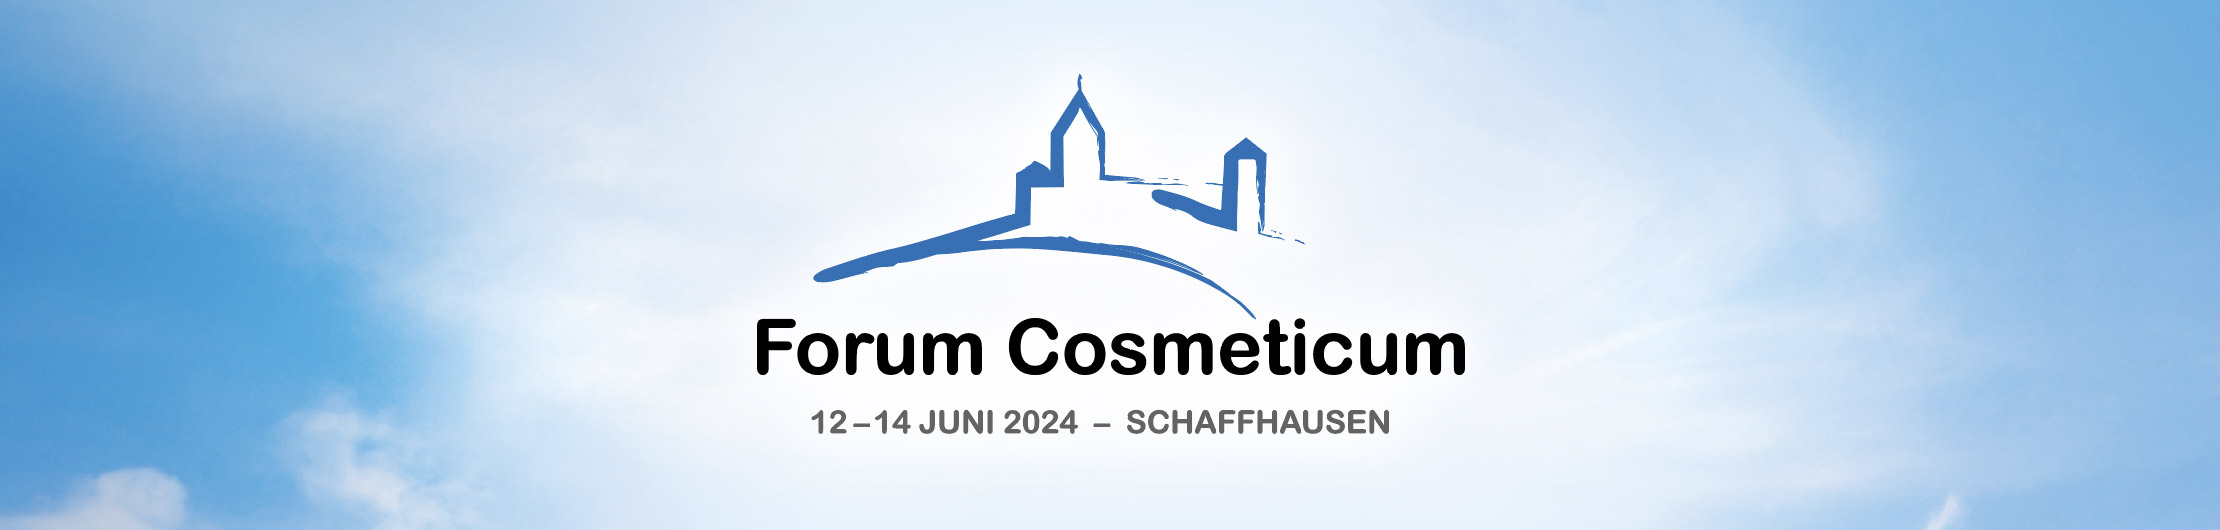 Forum Cosmeticum 2024